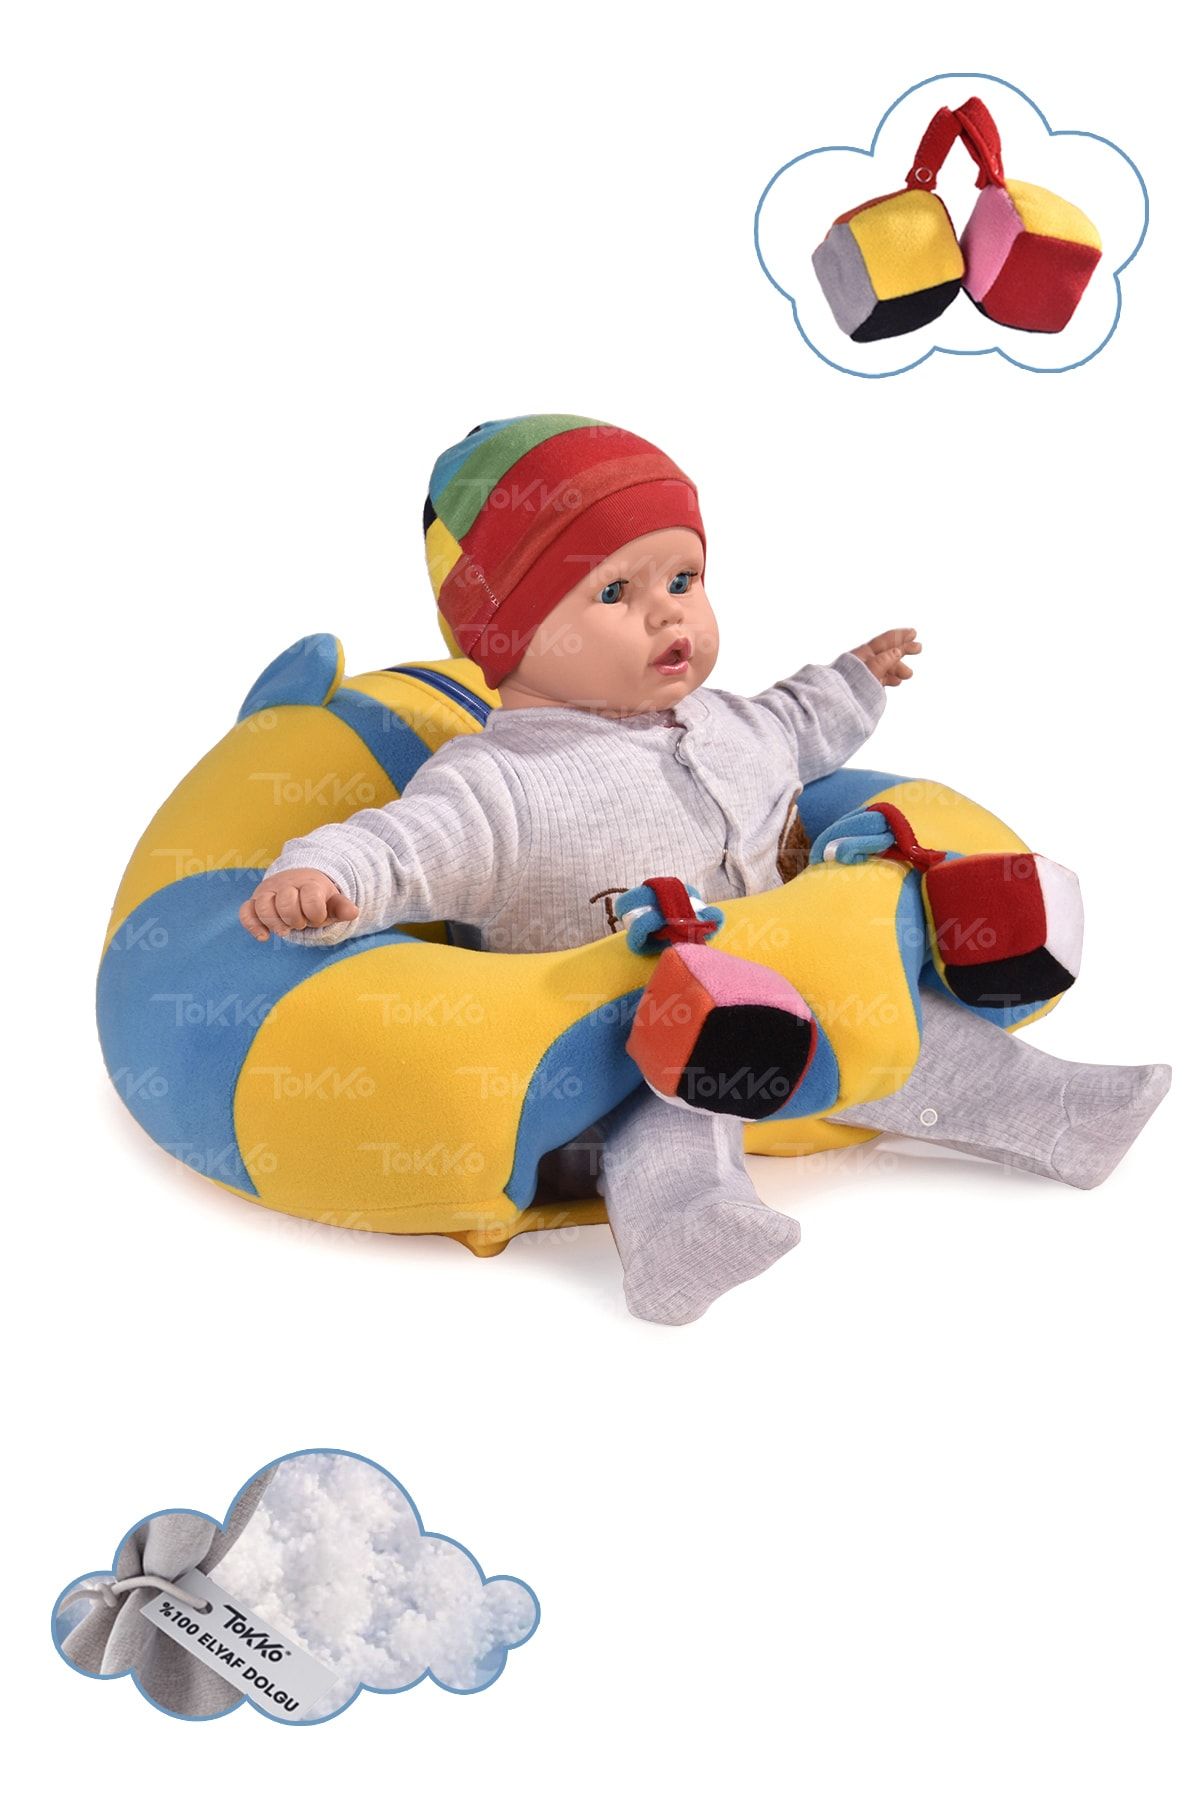 TOKKO Oyuncaklı Bebek Oturma Destek Minderi - Devrilmez Bebek Koltuğu - Büyük Bebek Oturağı Sarı Mavi